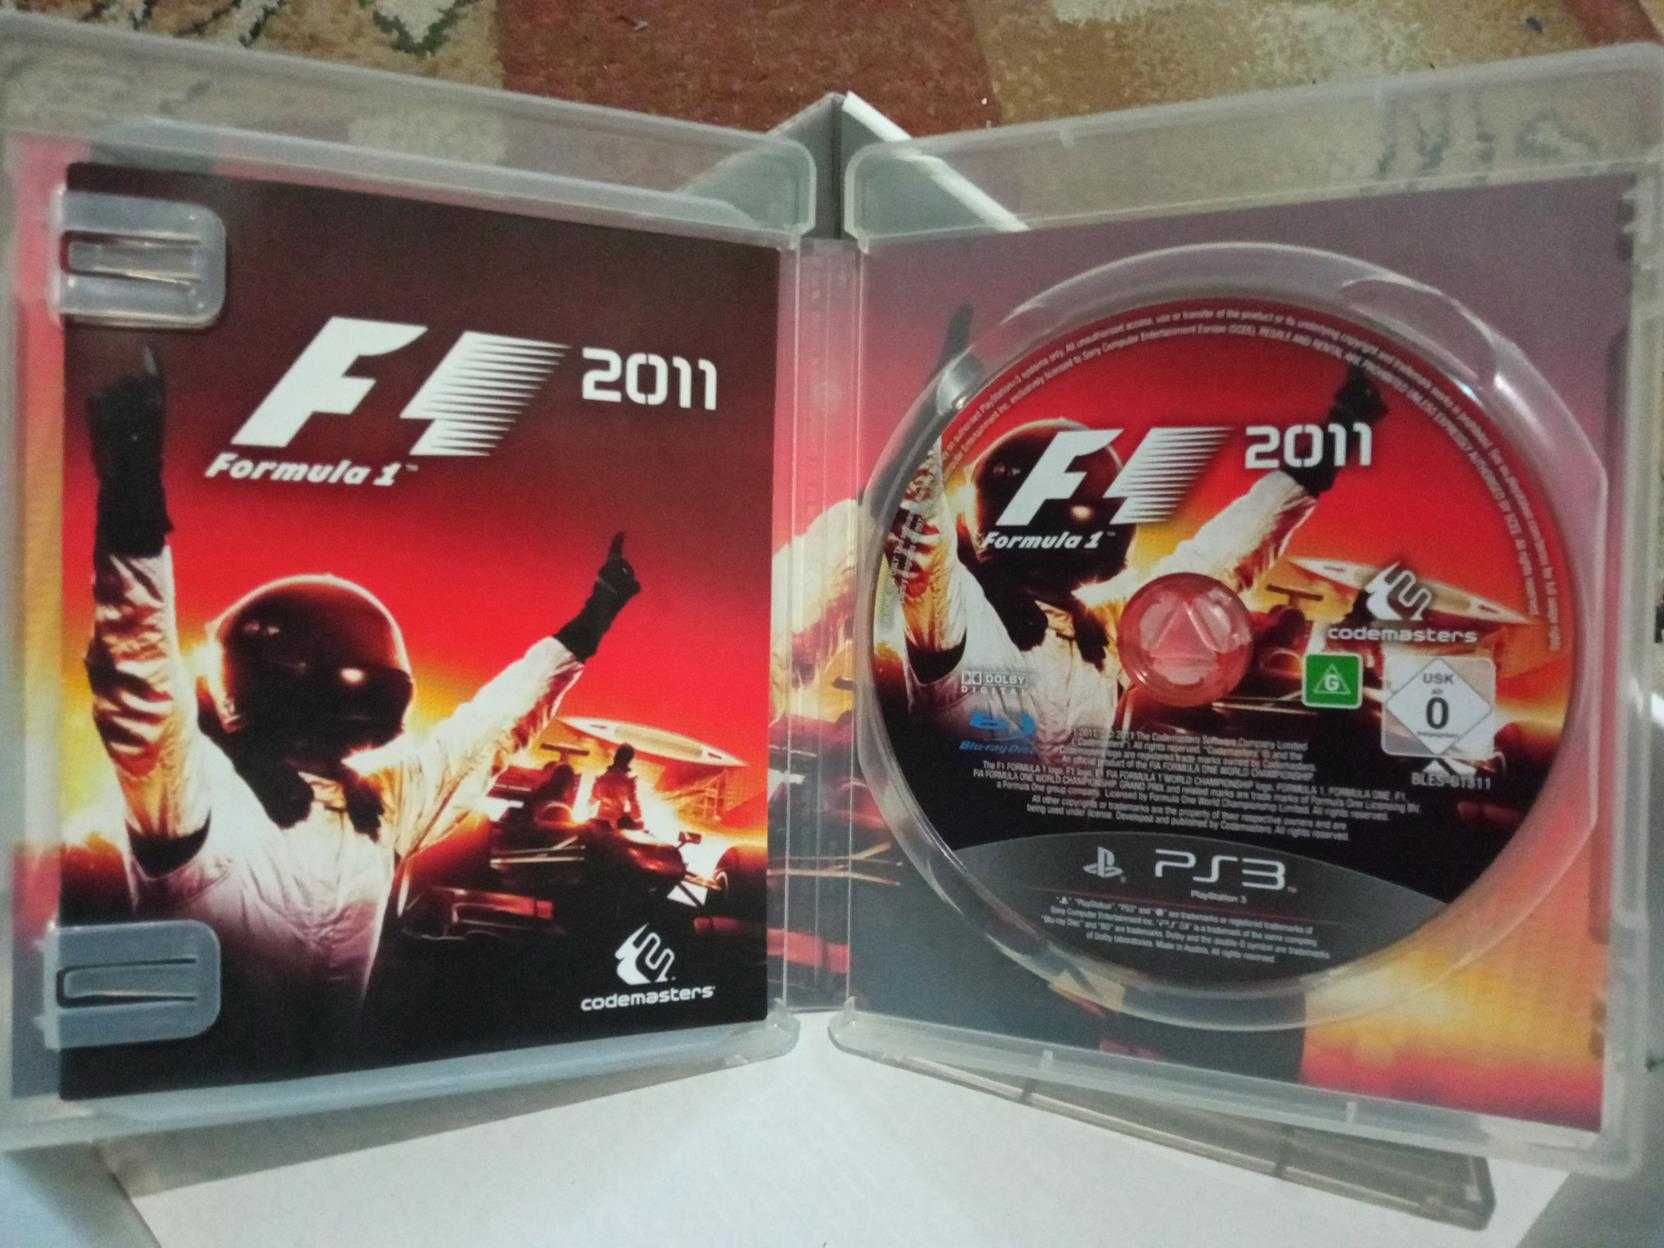 Gra F1 2011 PS3 Formuła 1 wyścigi samochodowe